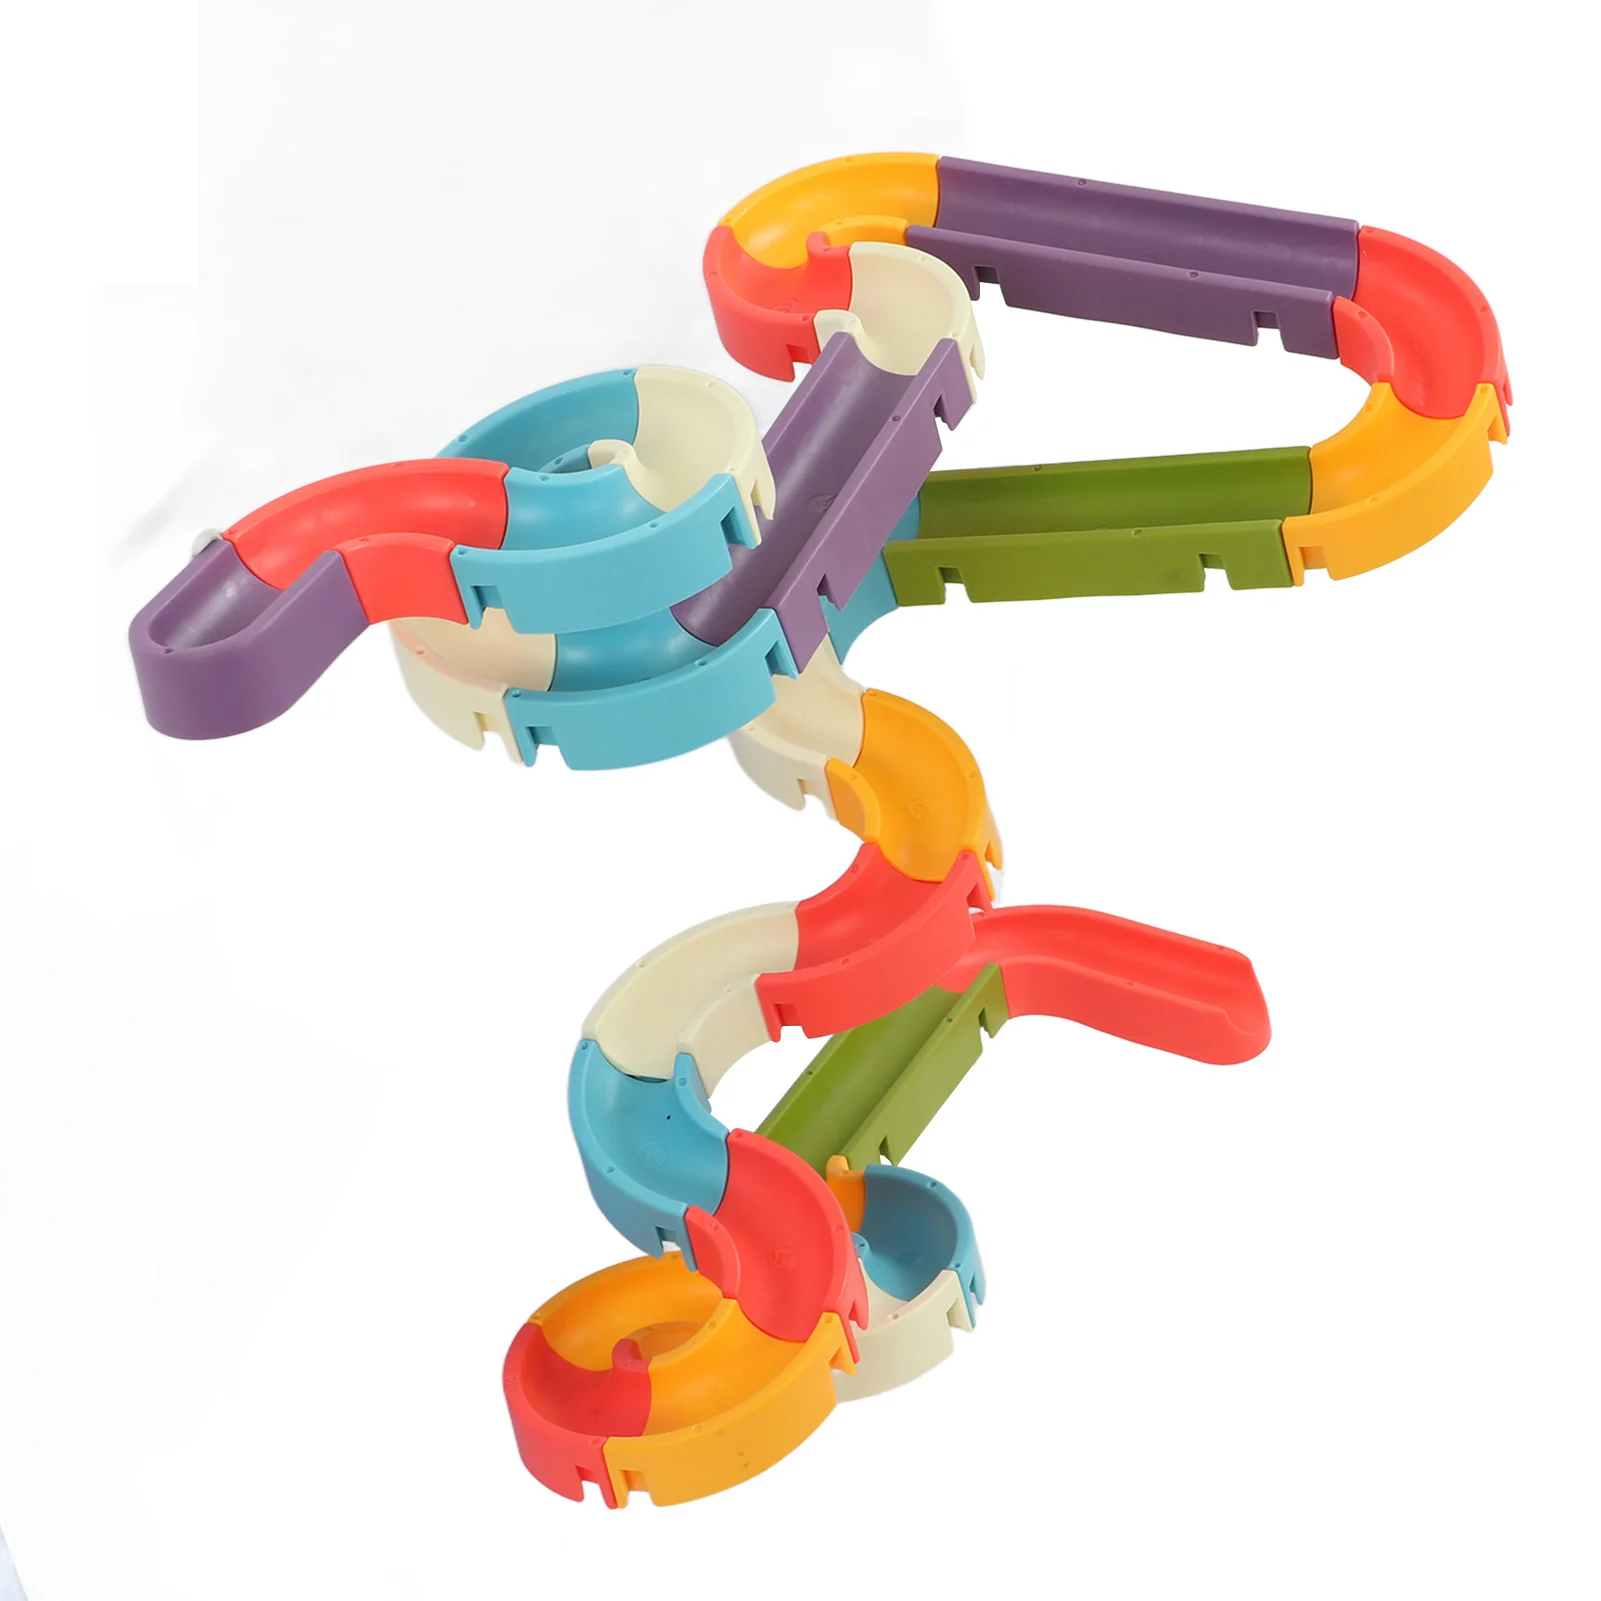 Bath Track Slide Toy for Toddler Kids Shower Educational DIY Rich